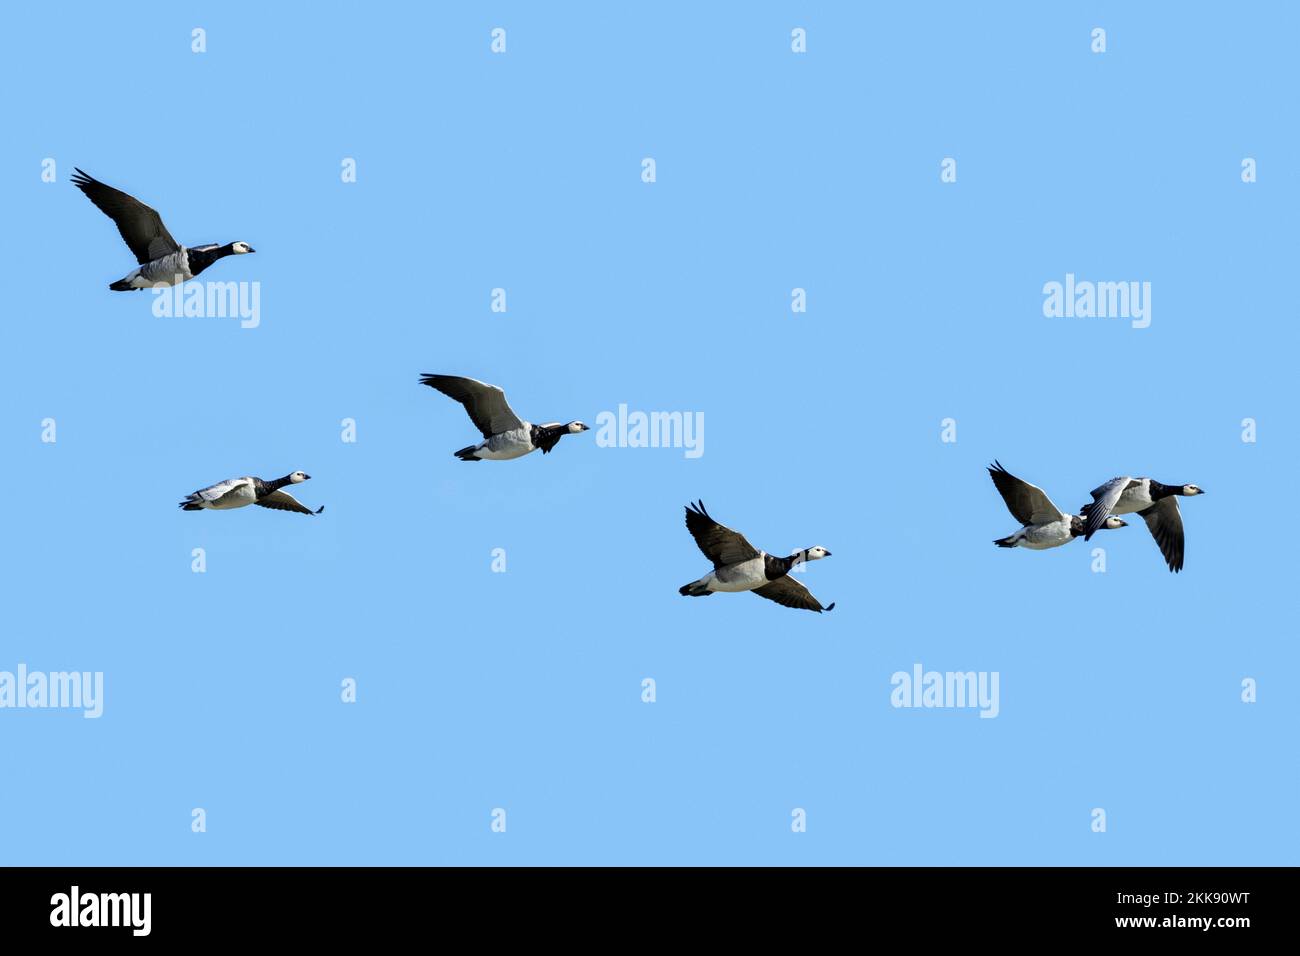 Rebaño de gansos de barnacle migratorios (Branta leucopsis) volando contra el cielo azul durante la migración otoñal Foto de stock